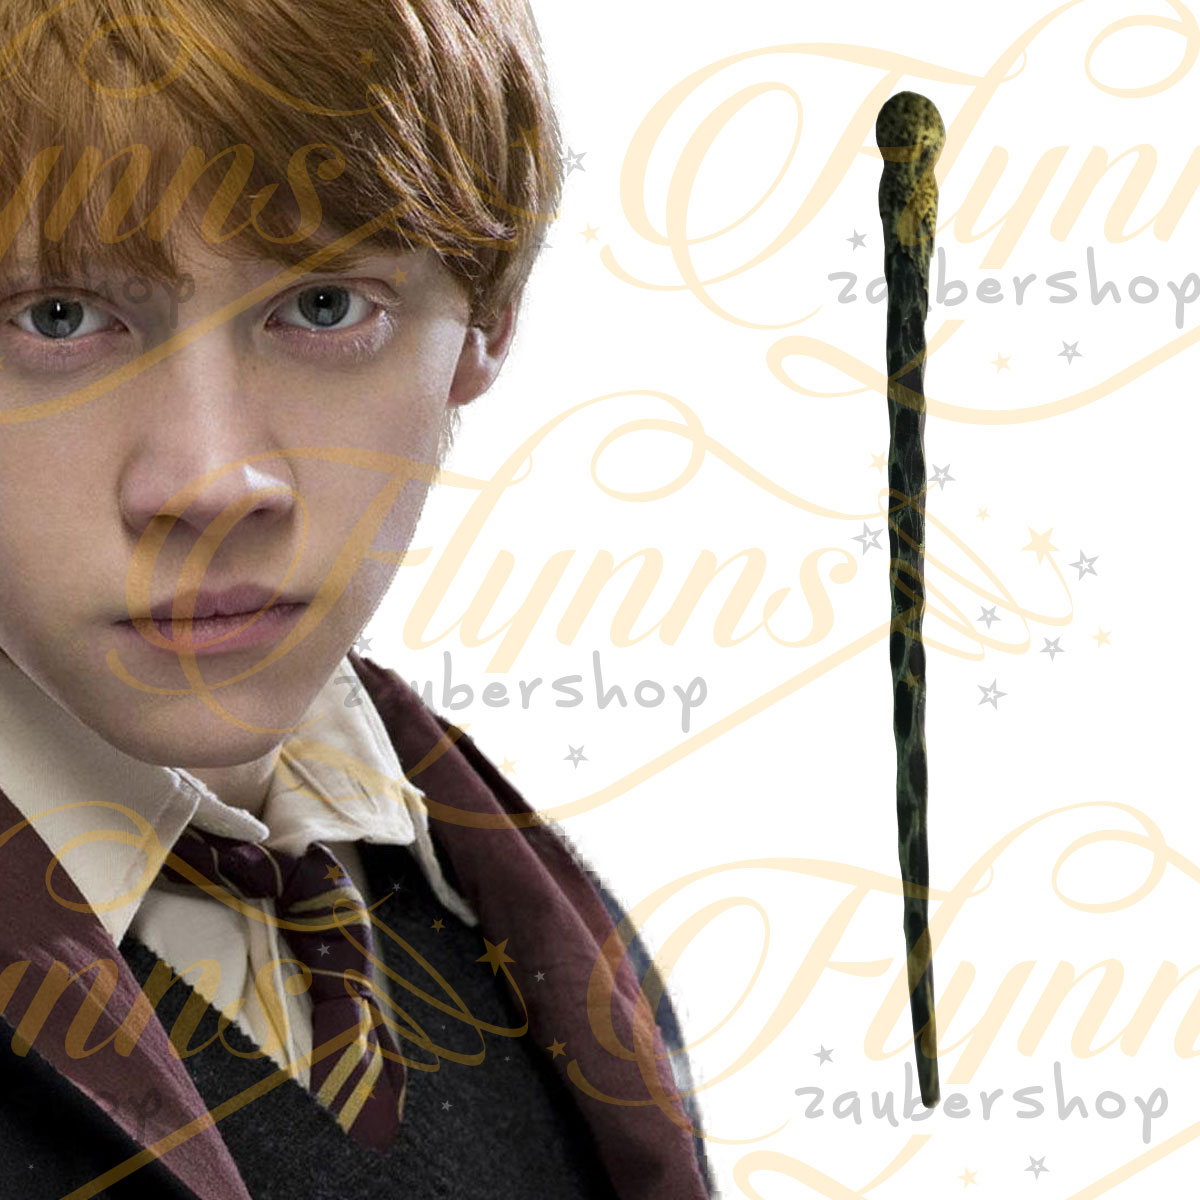 Ron Weasley | Harry Potter | Flynns Zaubershop